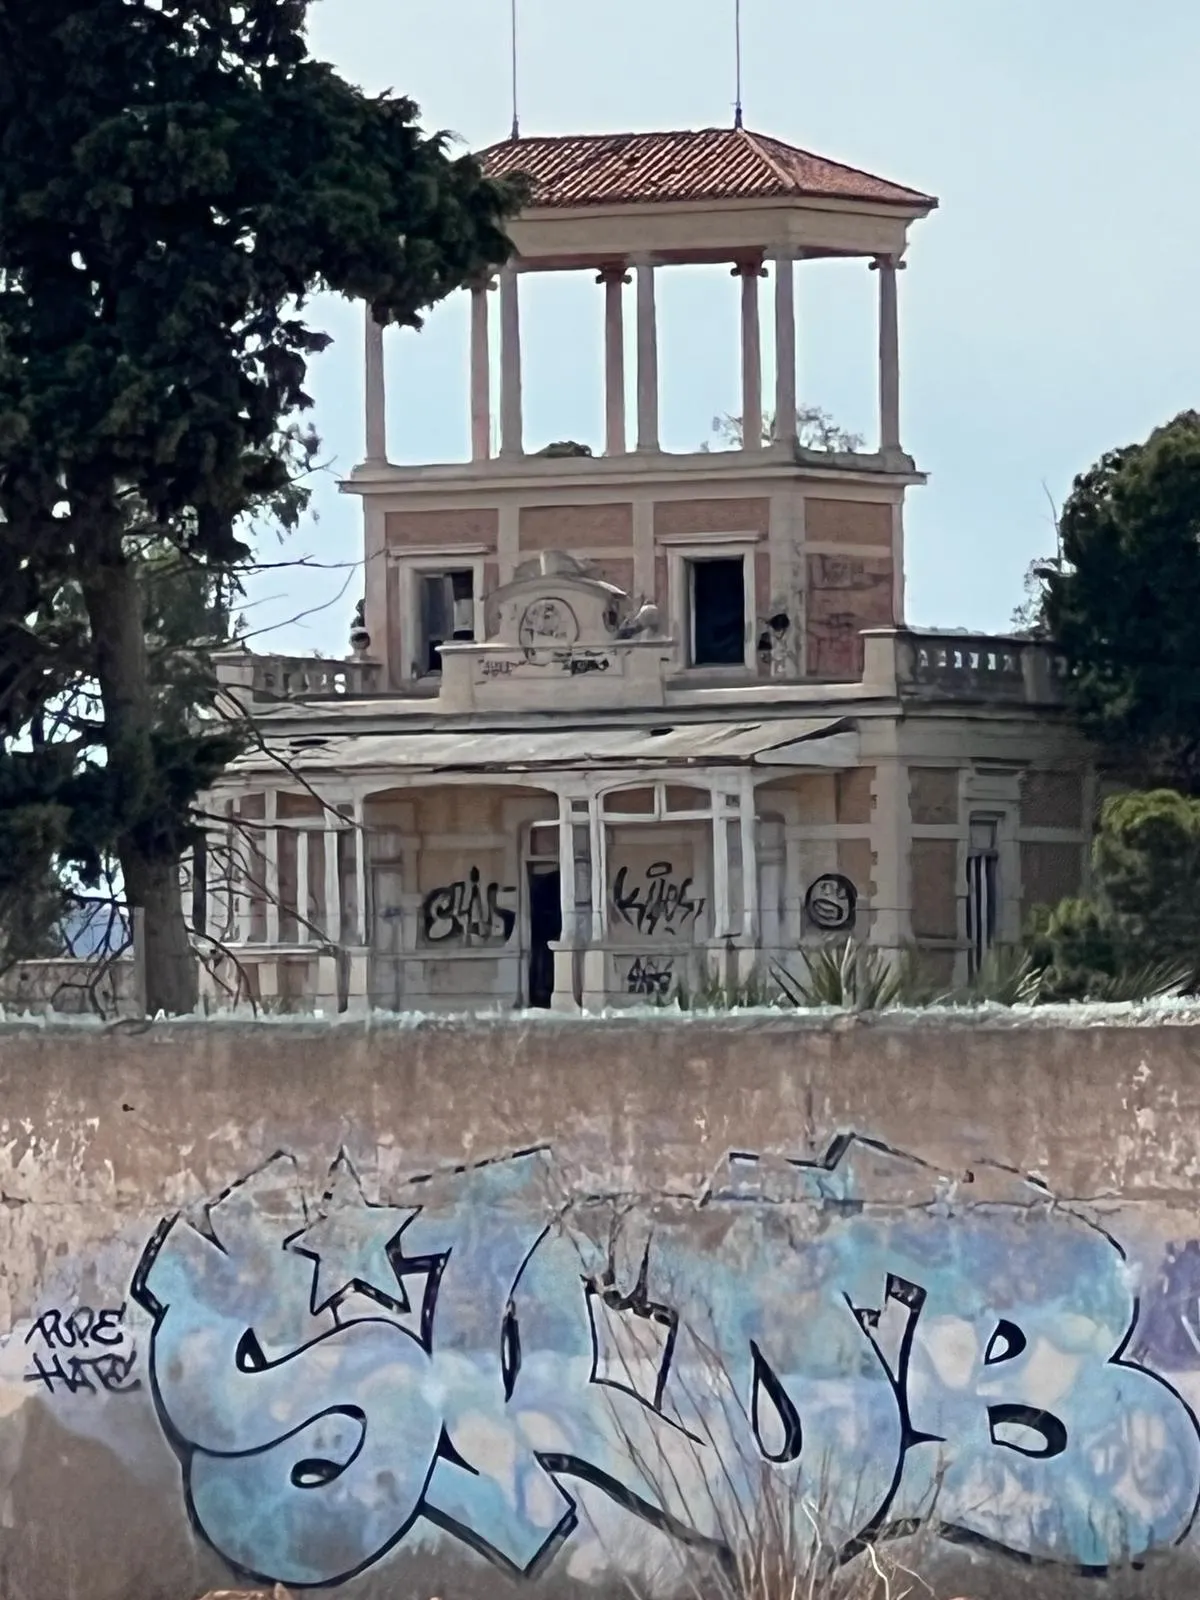 La Asociación Cartaginense denuncia vandalismo y accesos incontrolados a Villa Calamari